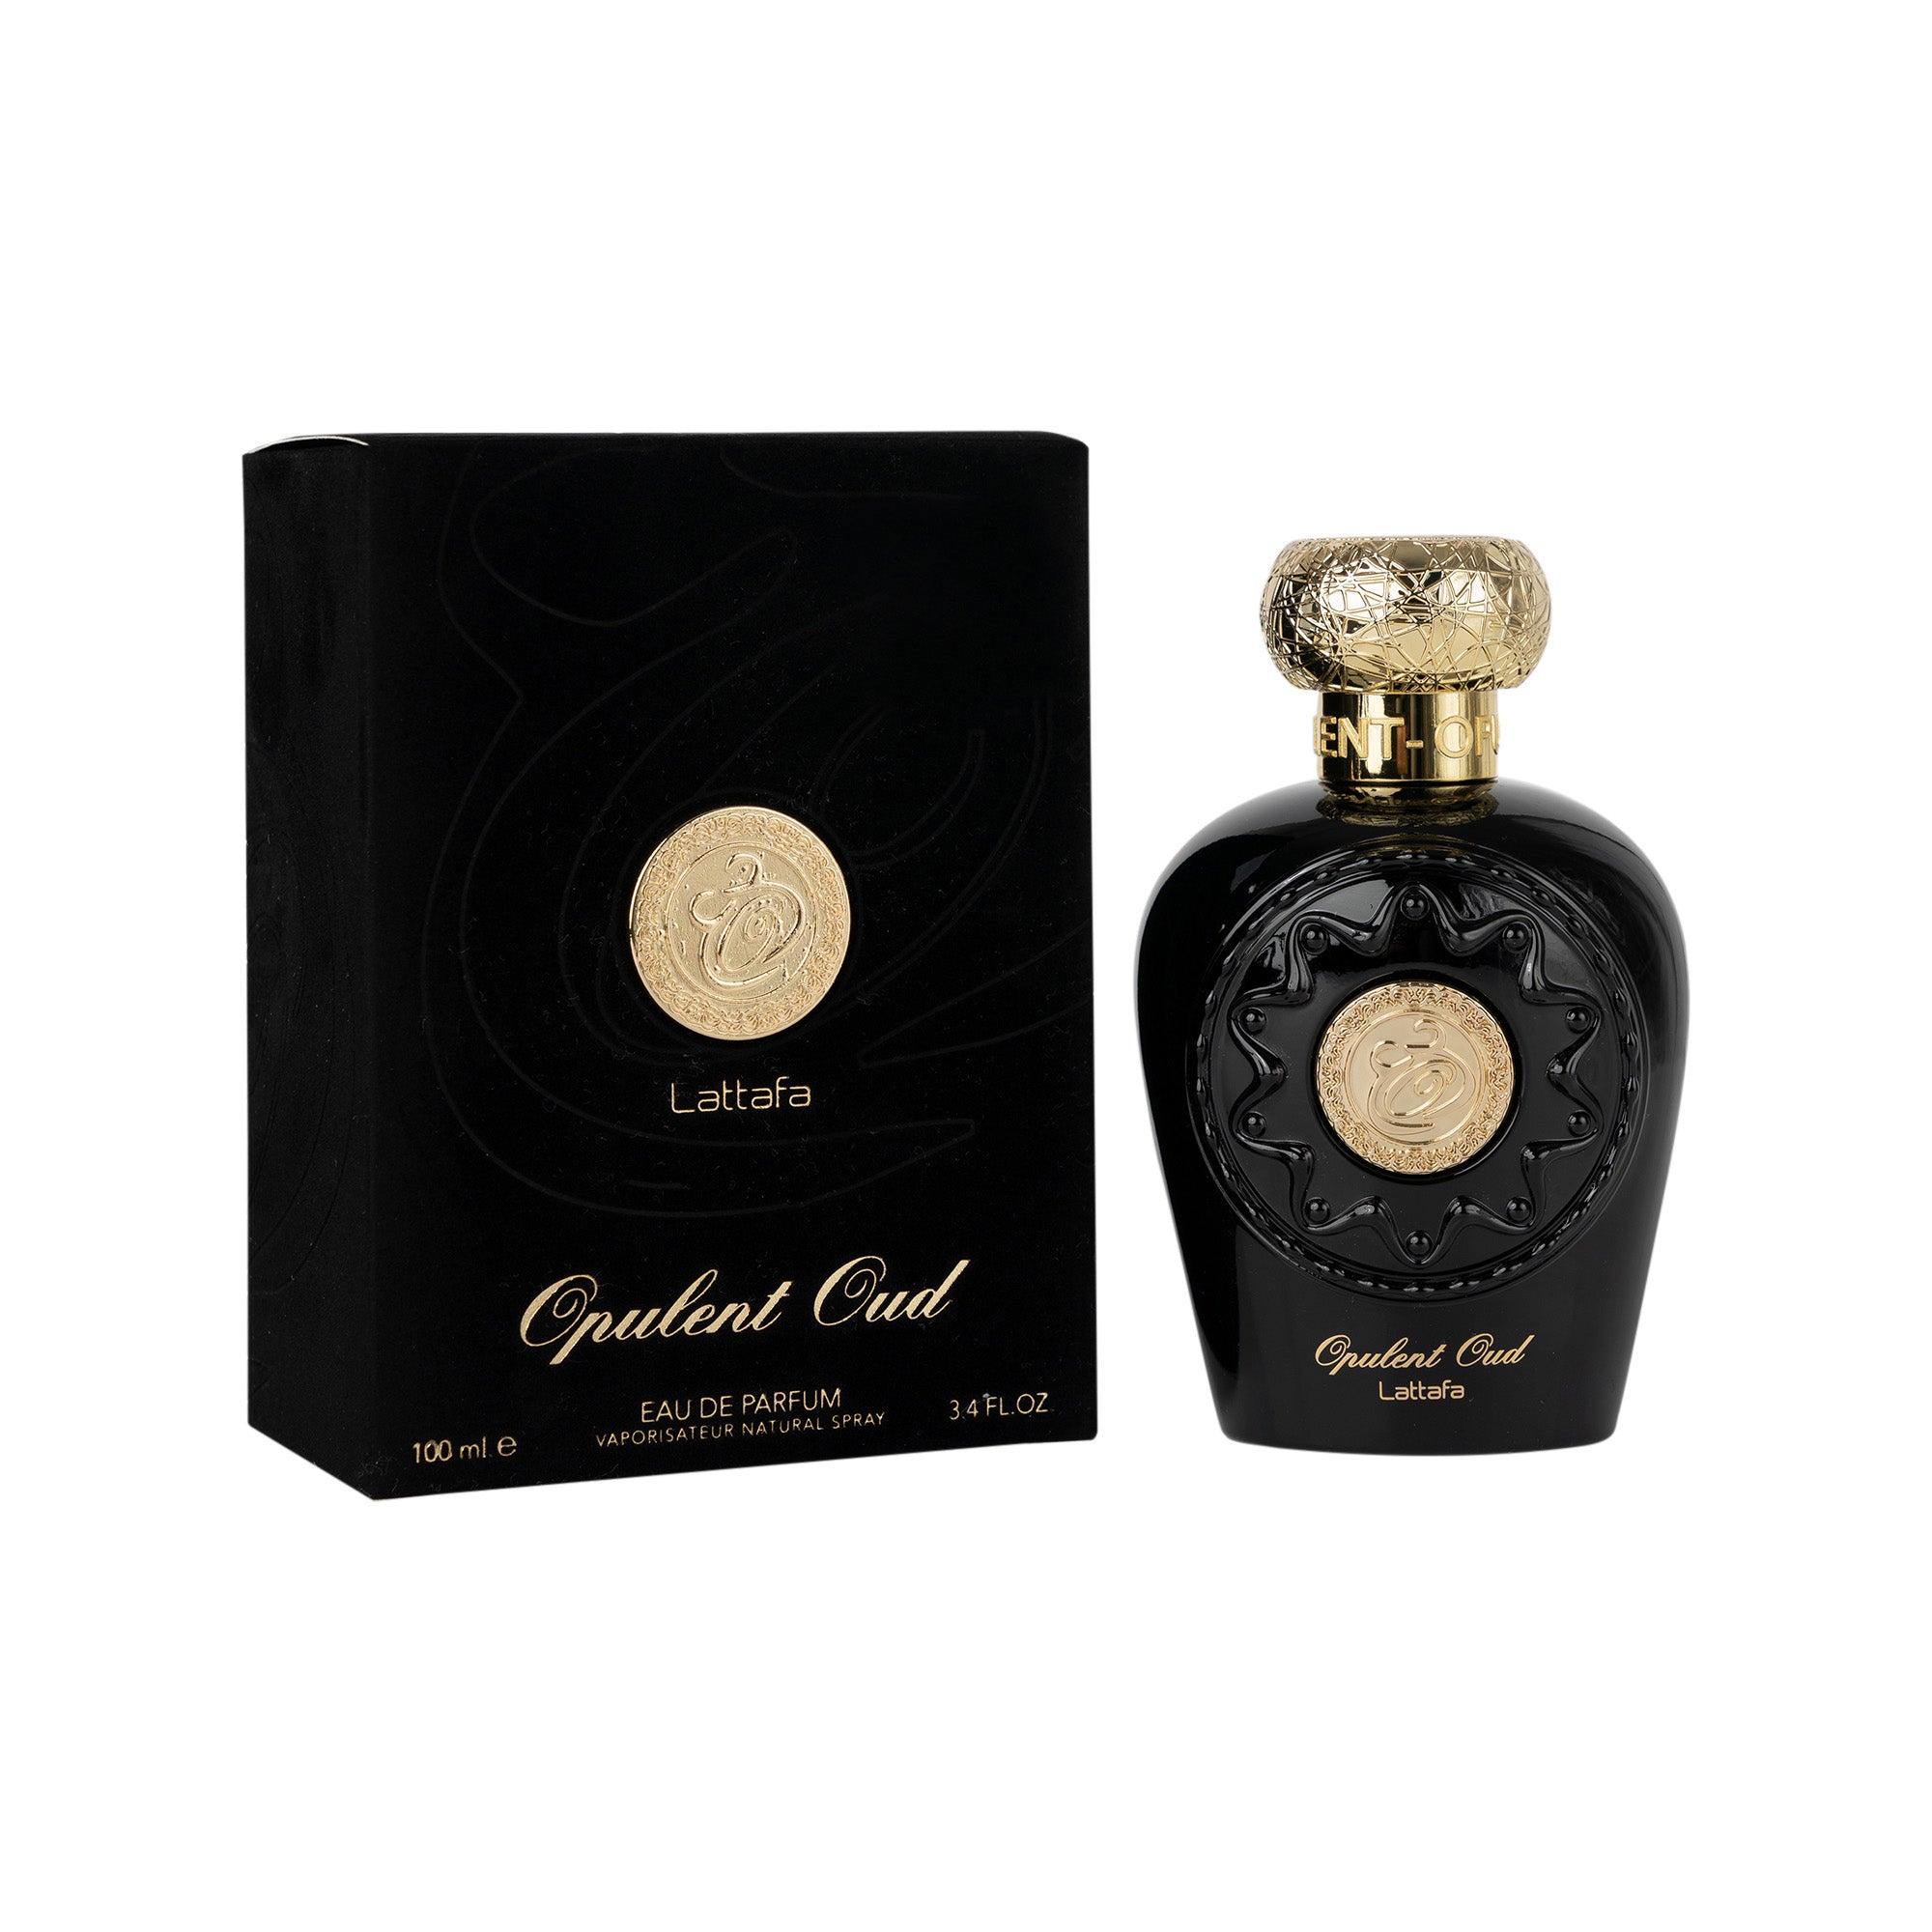 Lattafa Opulent Oud Eau de Parfum 100ml